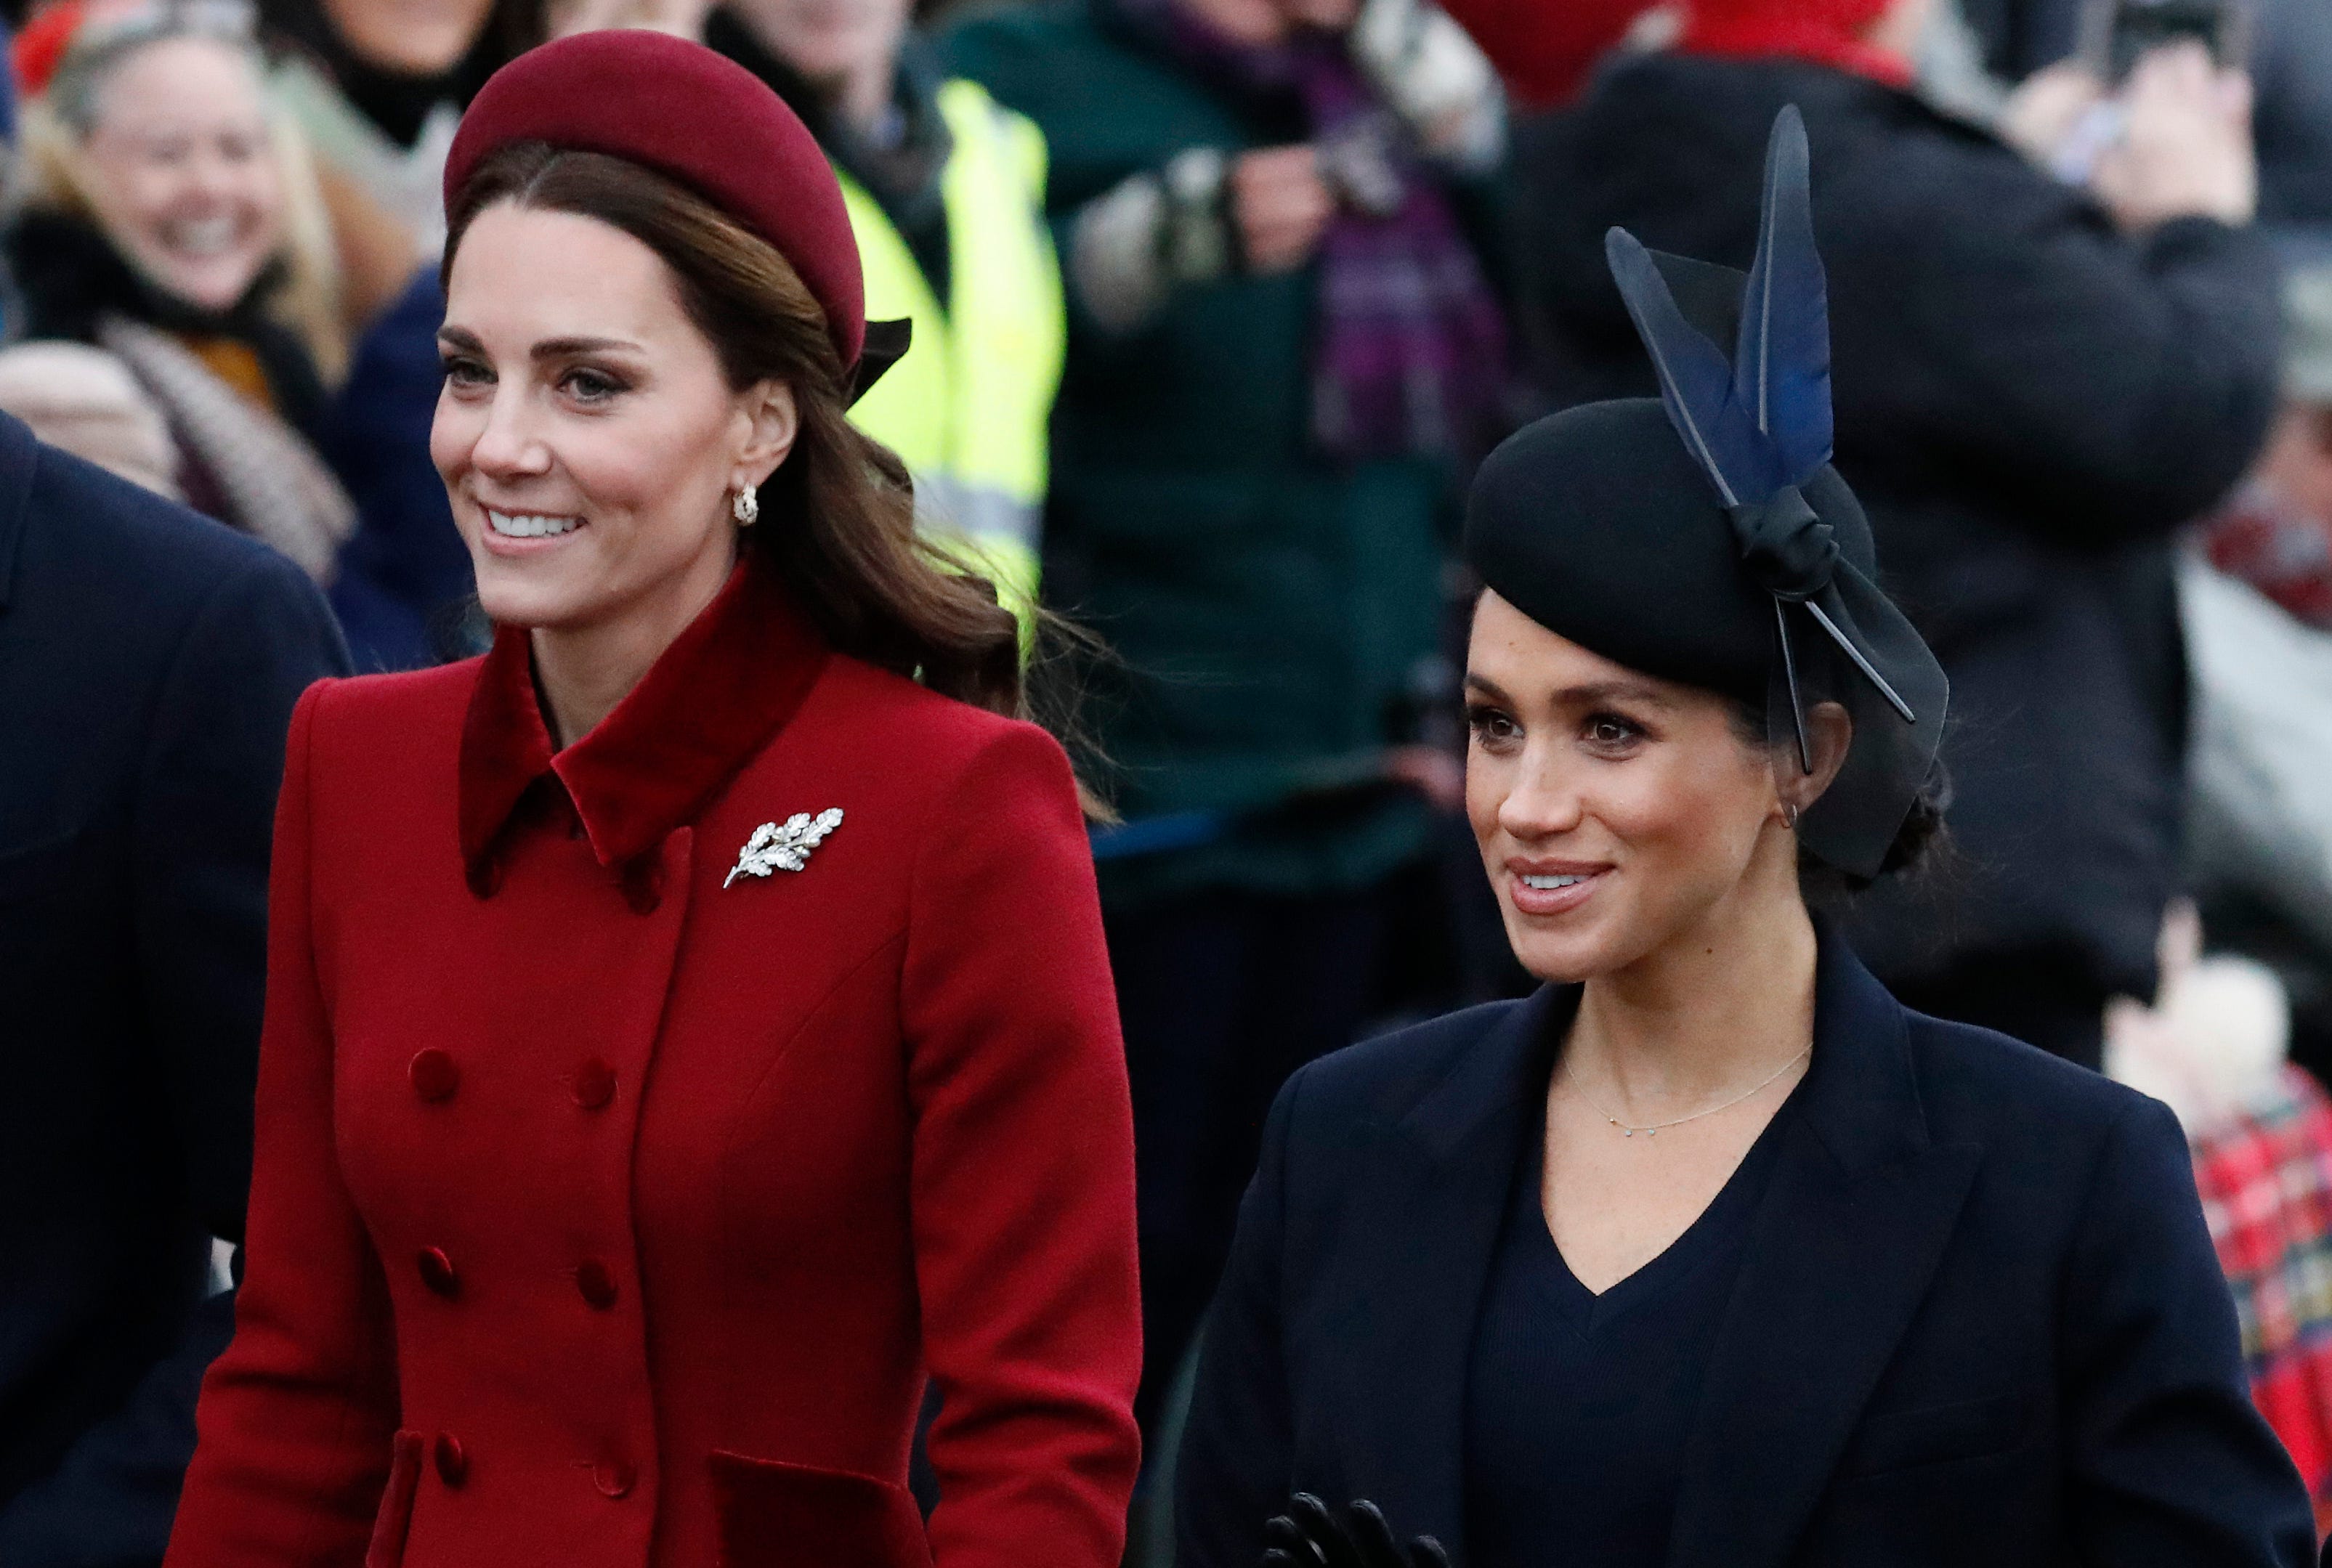 væske koncert At bygge Kate v Meghan: Princesses at War?' investigated rumored royal feud